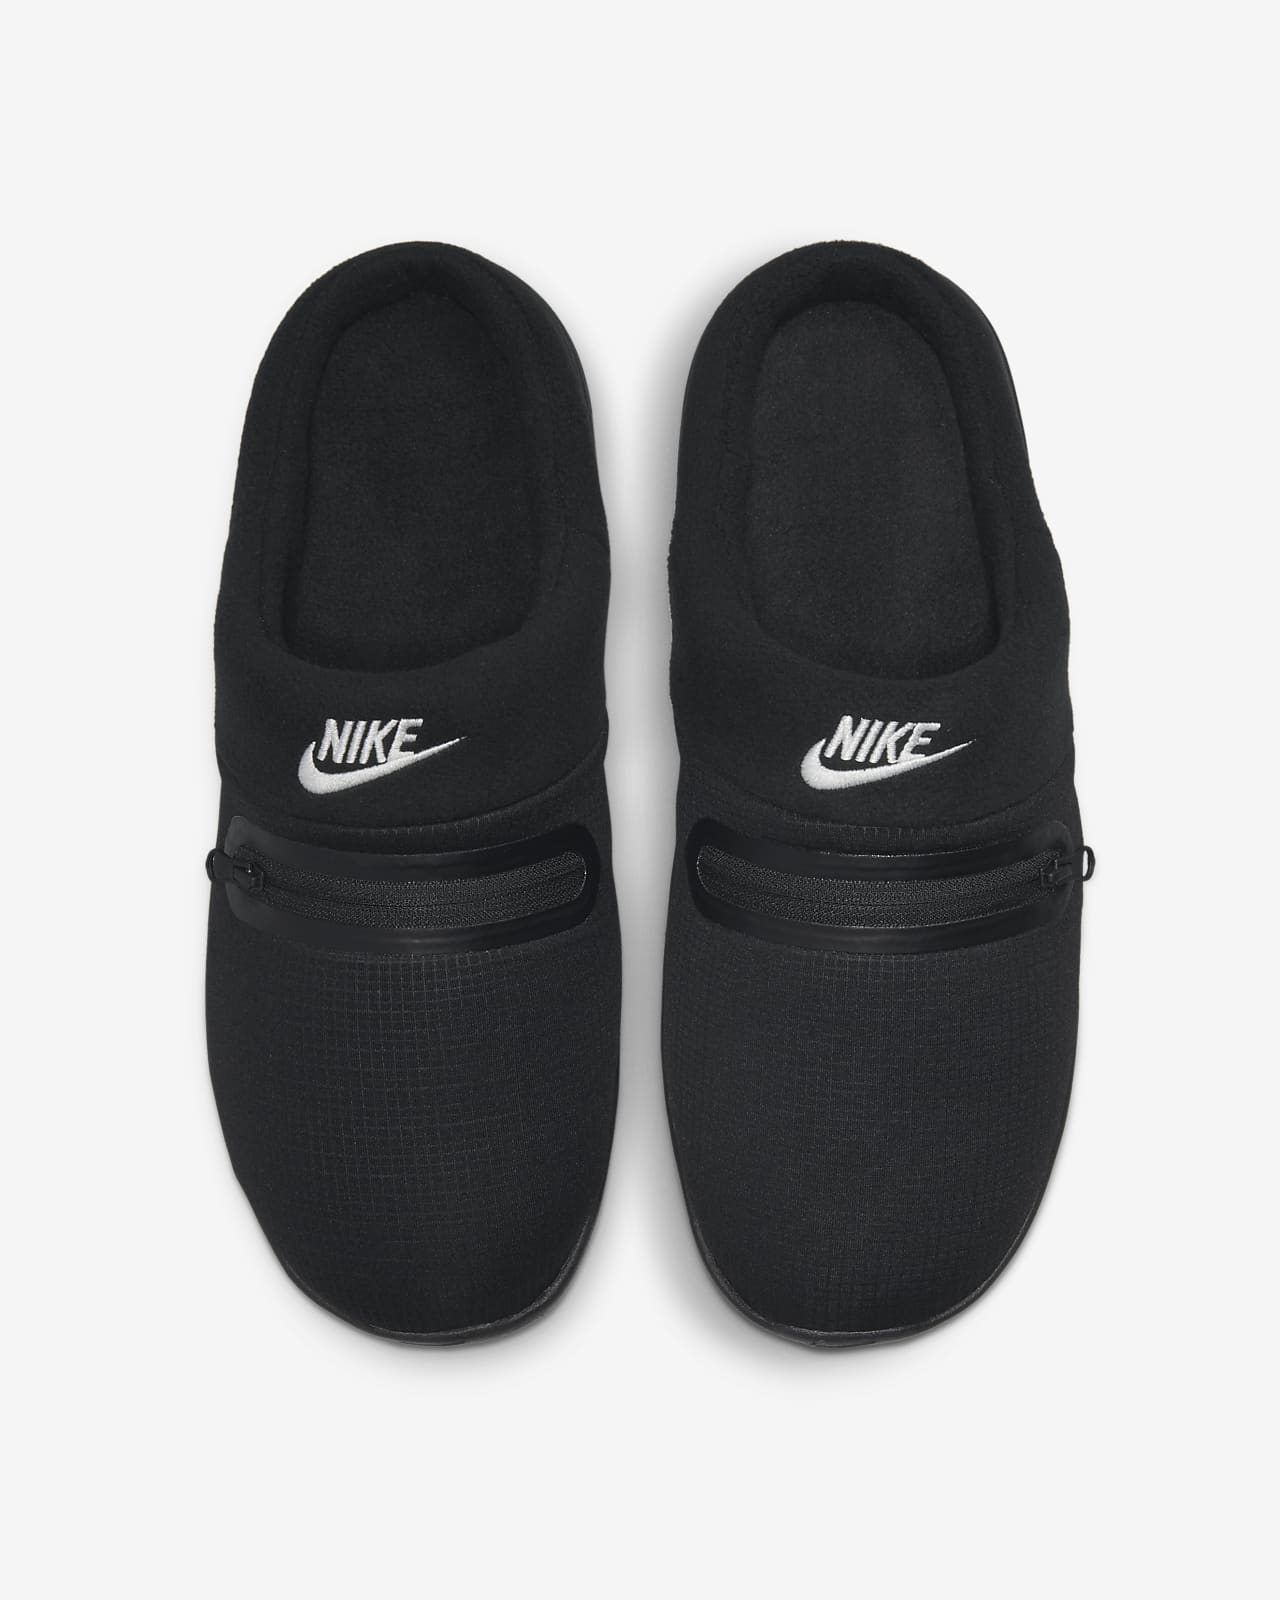 Nike Slippers for Men for sale | eBay